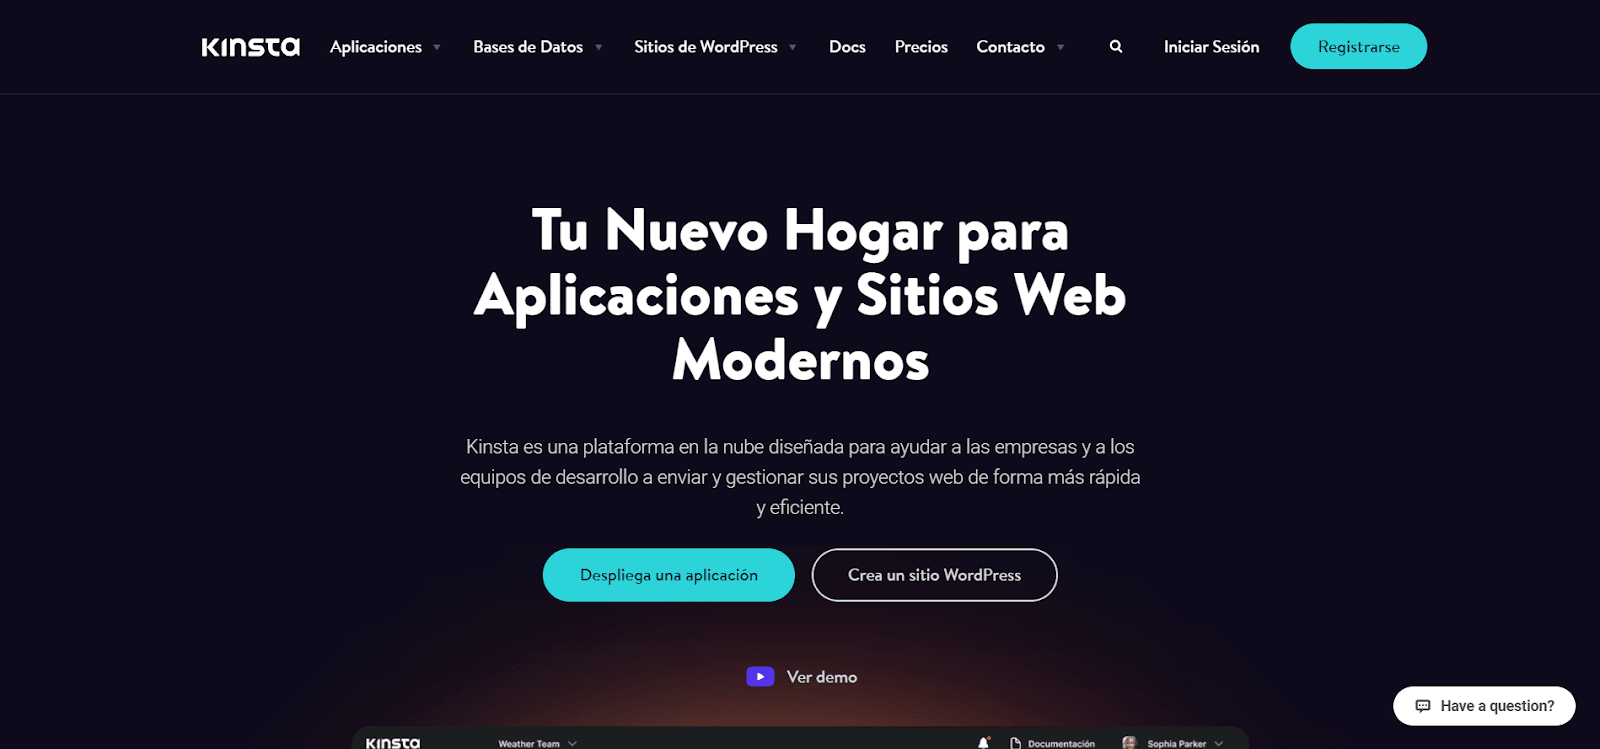 Die Kinsta-Startseite auf Spanisch